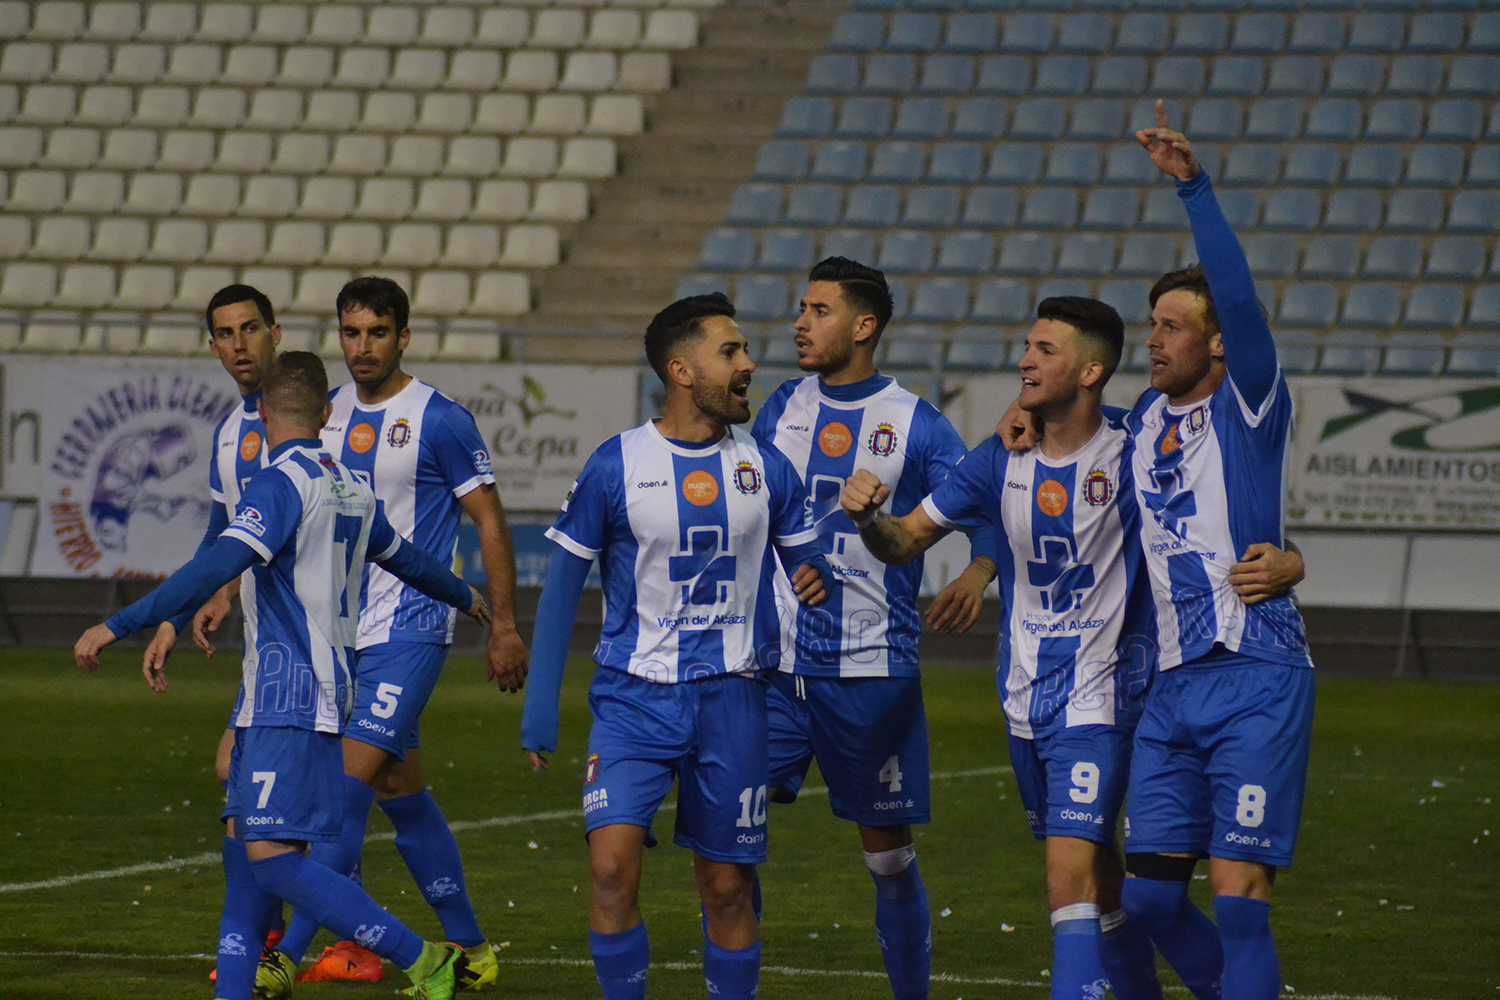 GALERÍA: Lorca Deportiva 1-0 UCAM Murcia